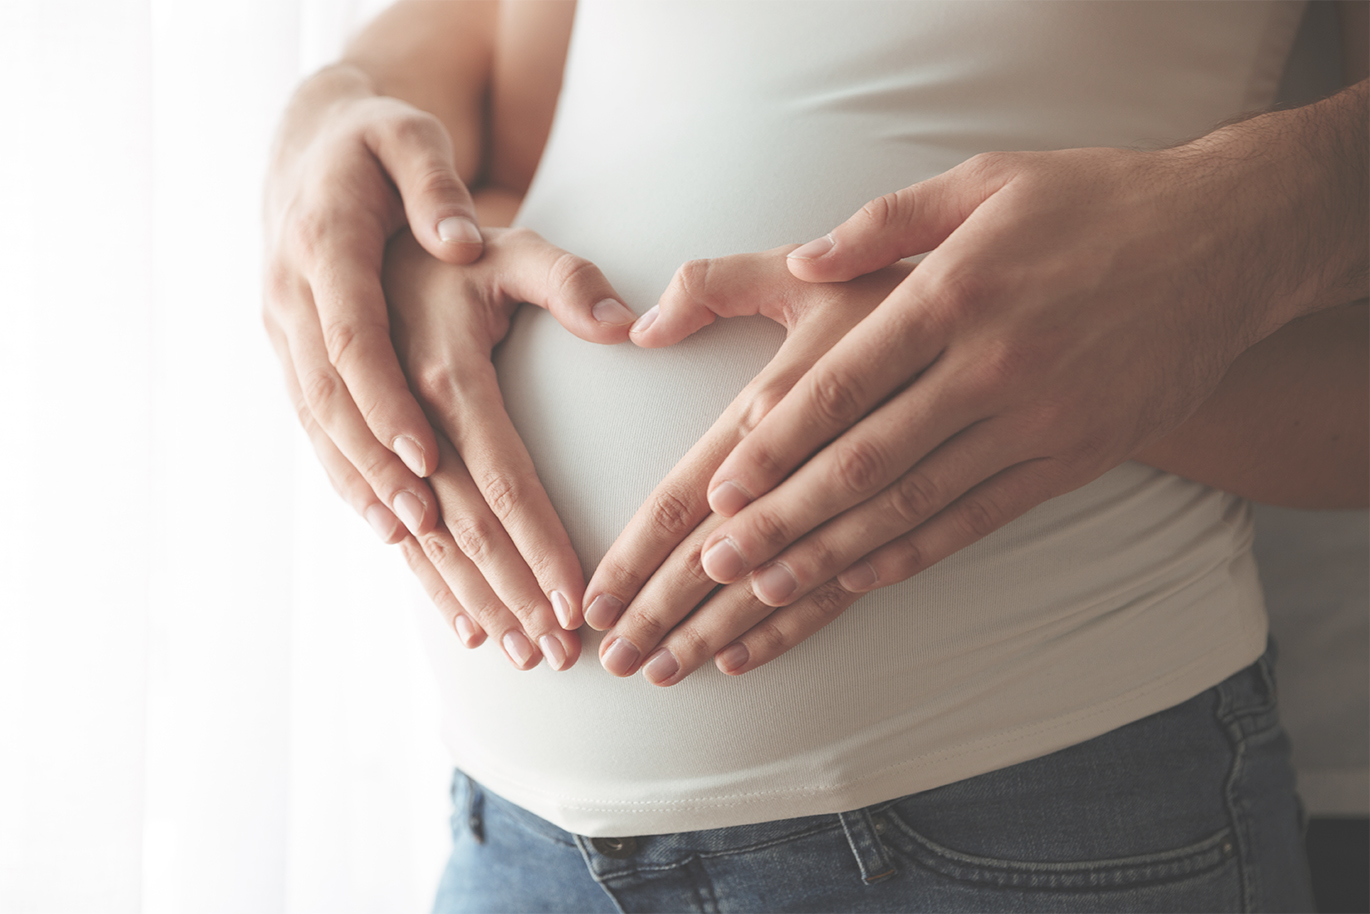 IVF Pregnancy shreshta fertility Centre